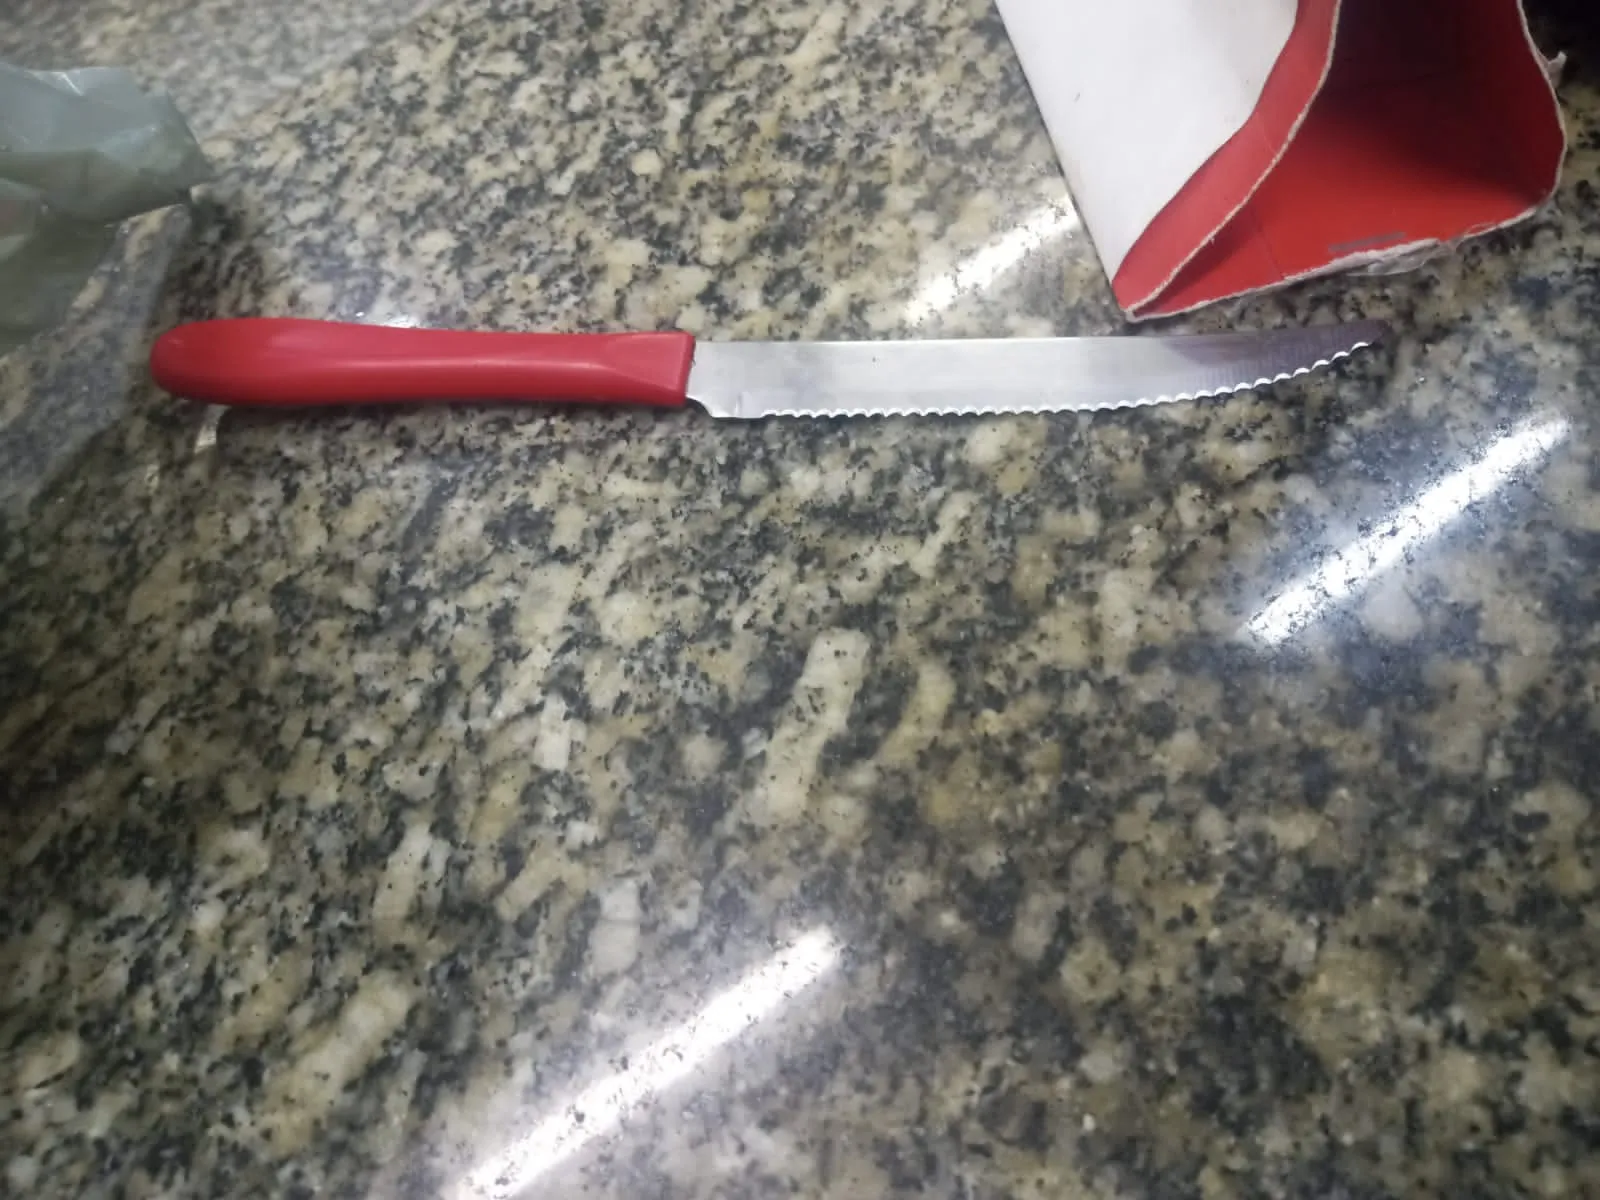 Suspeito usou faca de cozinha para machucar as vítimas